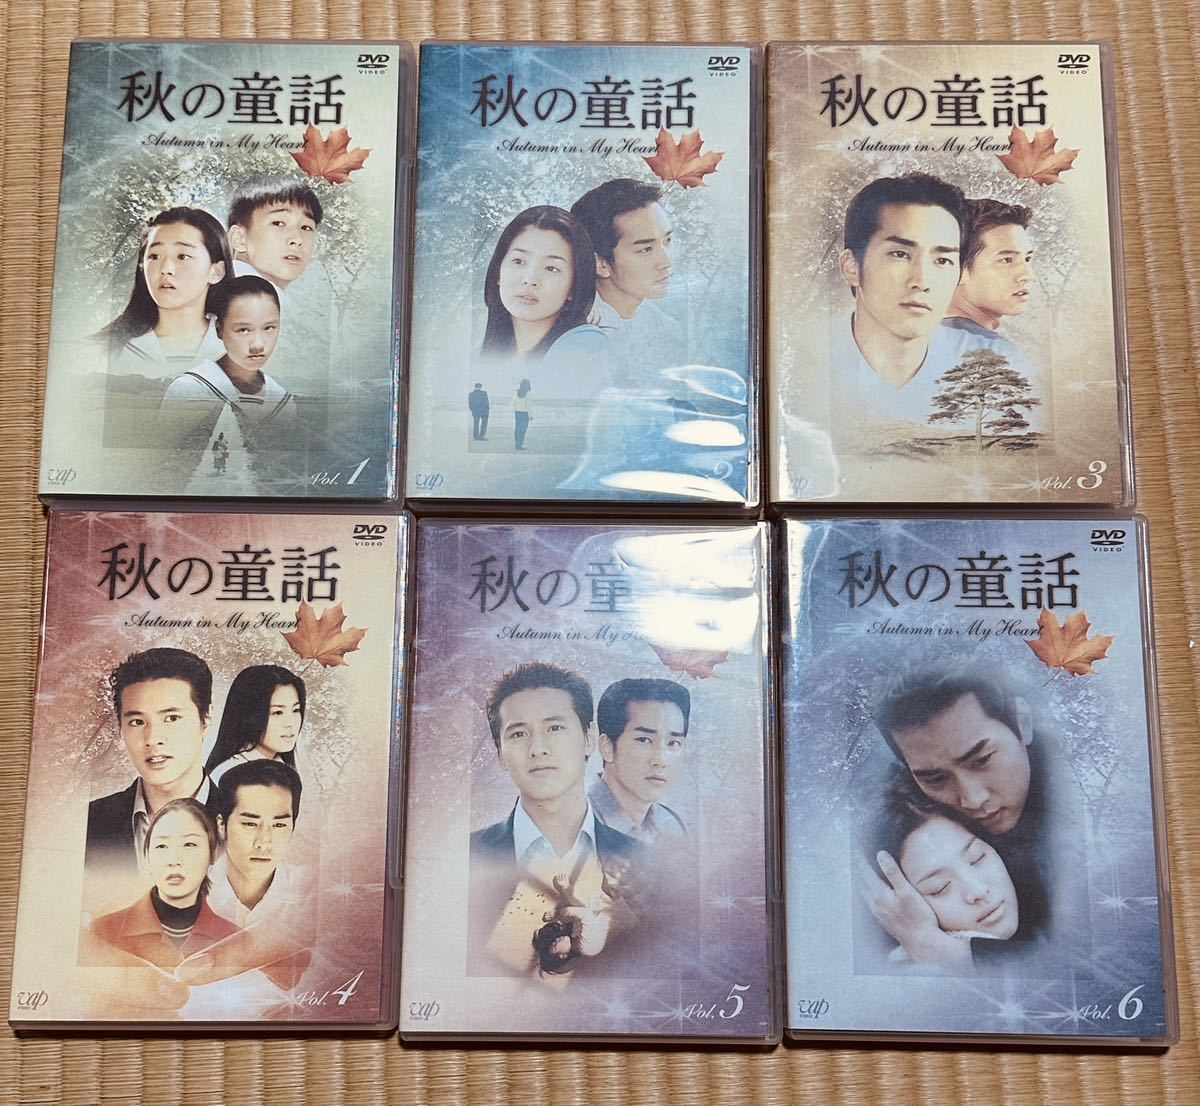 秋の童話 Autumn in My Heart DVD-BOX(中古/送料無料)のヤフオク落札情報